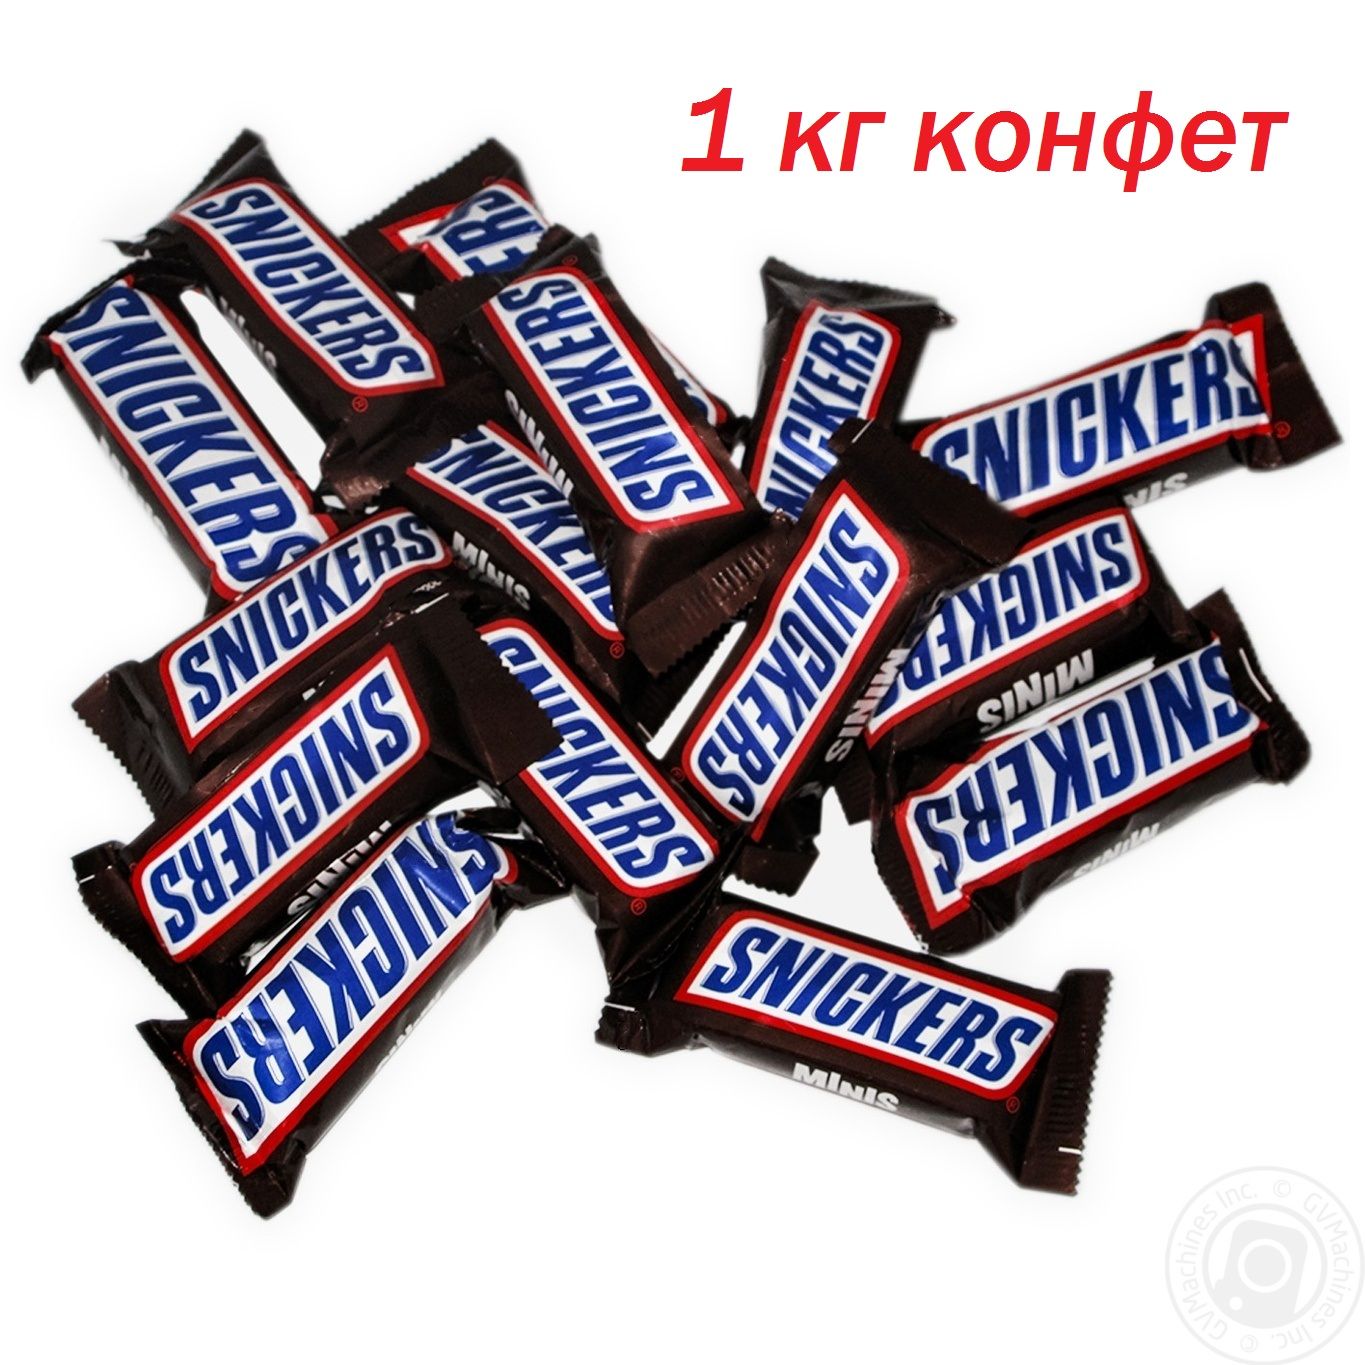 Сникерс Минис вес 1 конфеты